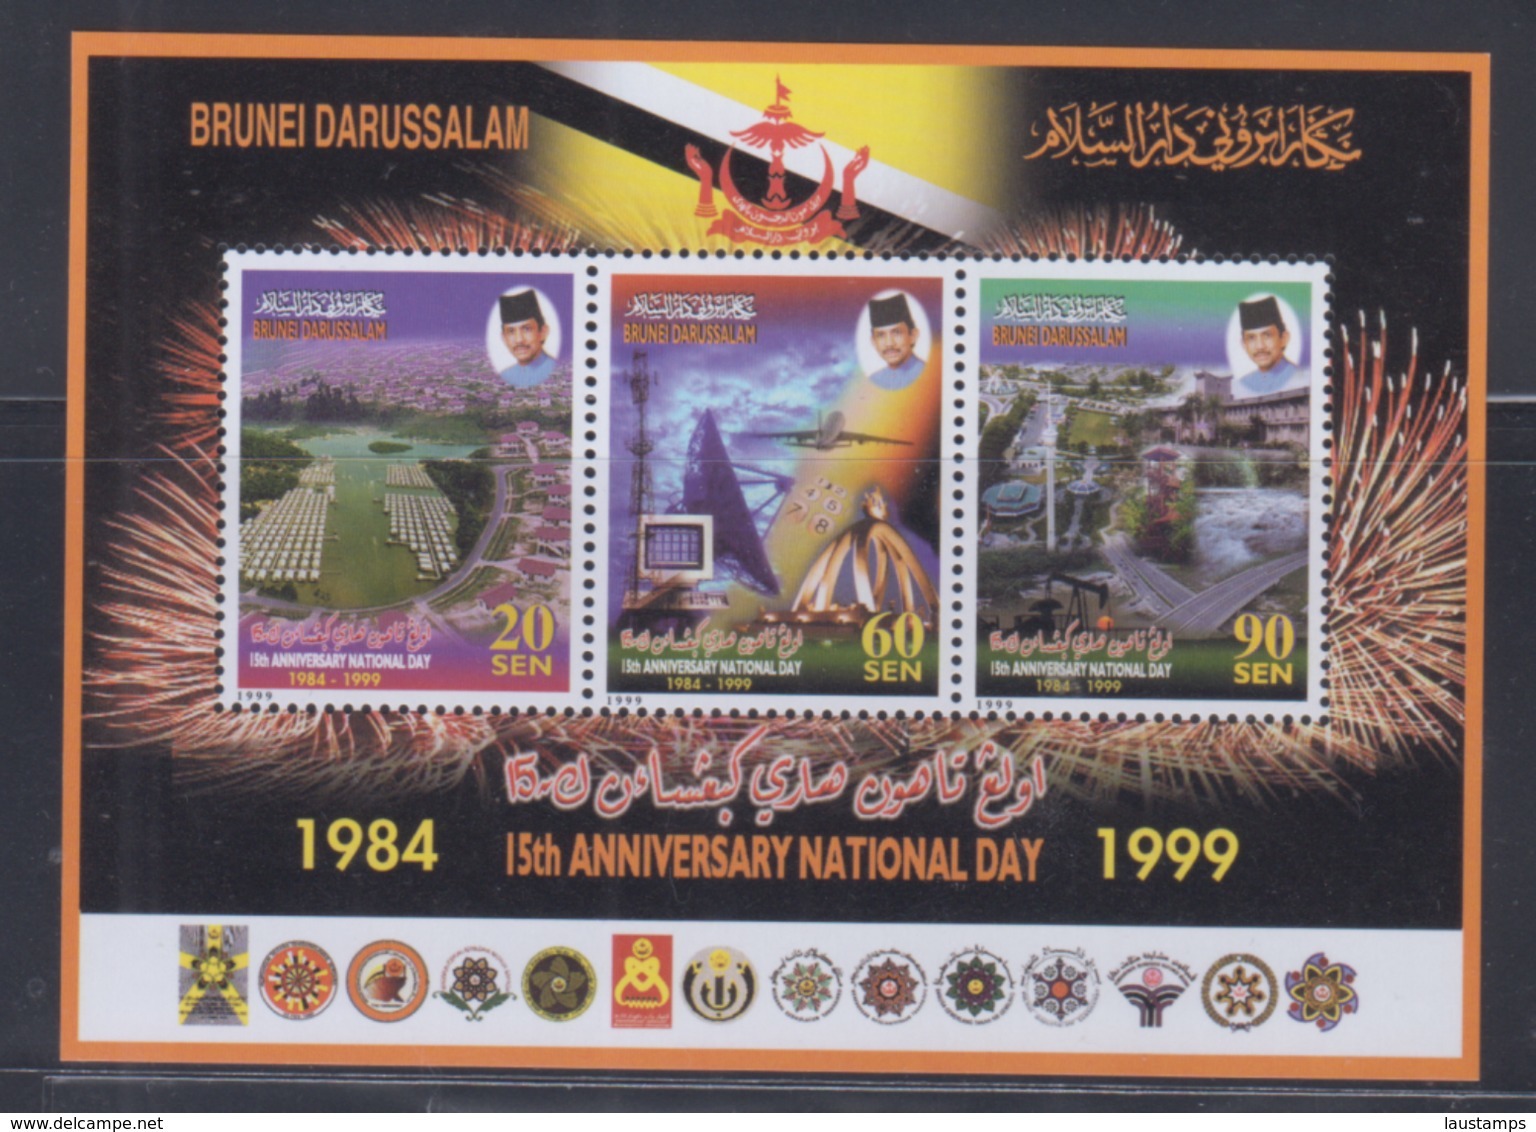 Brunei 1999 15th Anniversary National Day S/S MNH - Brunei (1984-...)